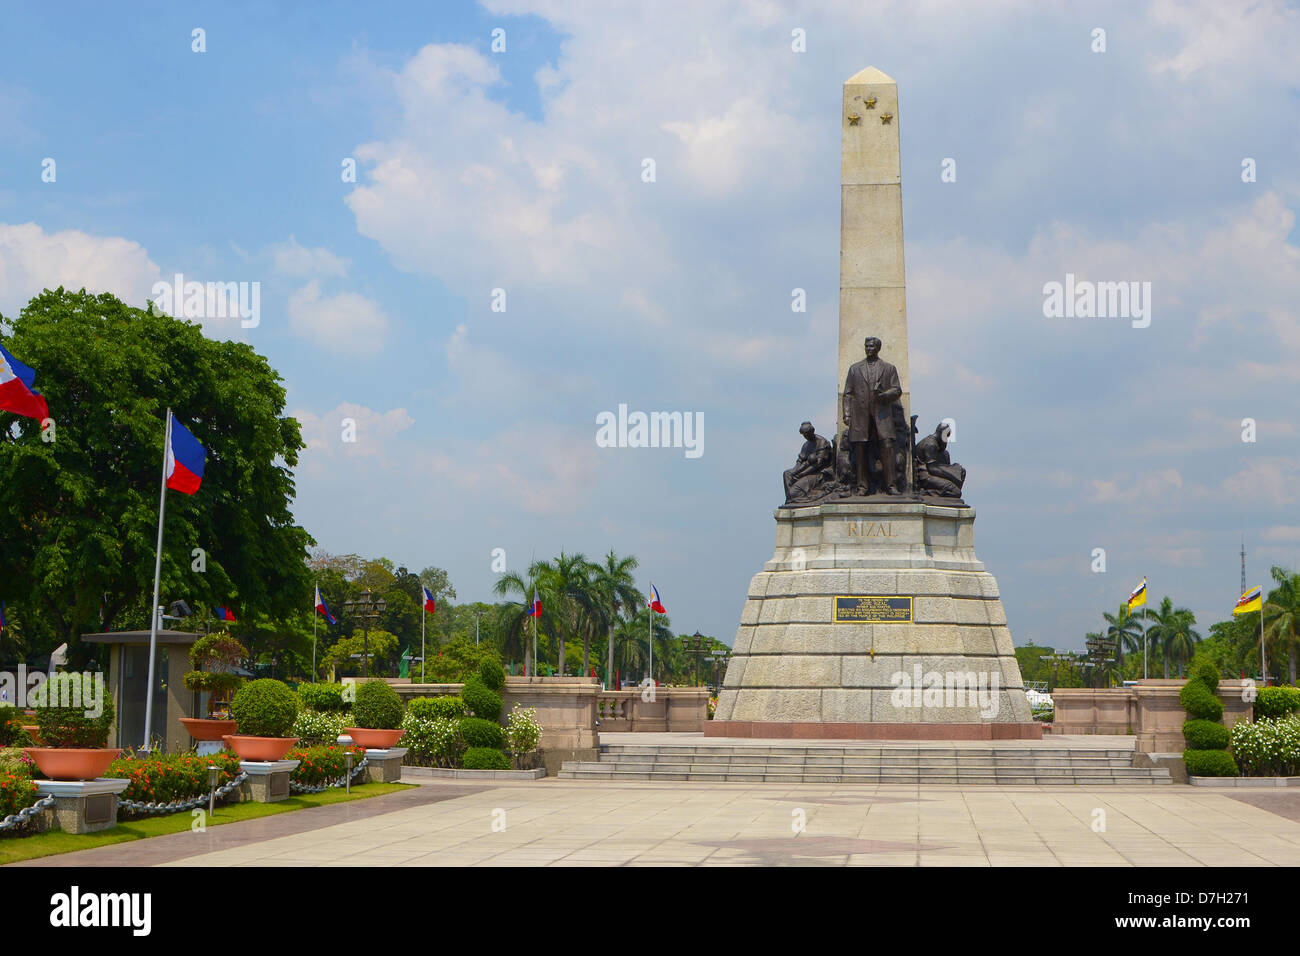 Philippine célèbre monument, monument de l'héros national Jose Rizal Rizal Park à Manille, aux Philippines. Banque D'Images